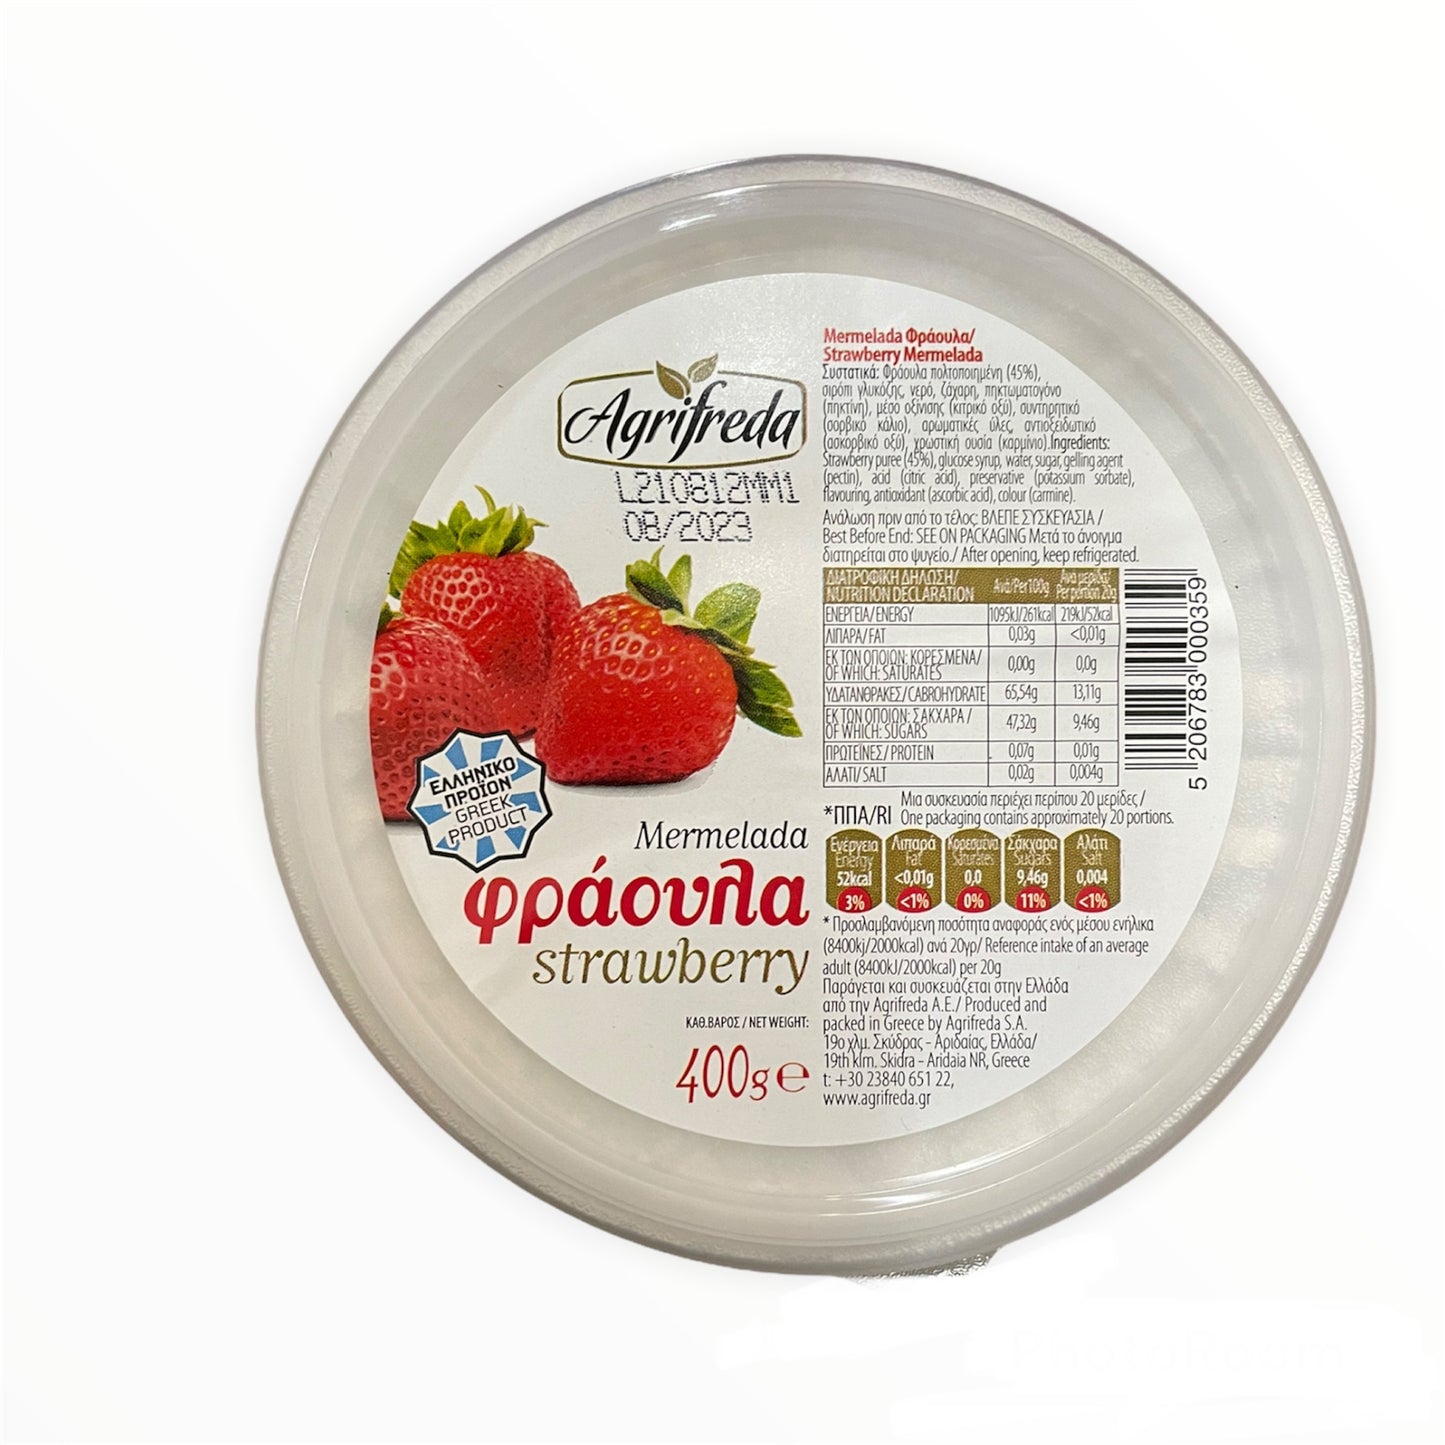 Agrifreda Marmelade Erdbeere 400g